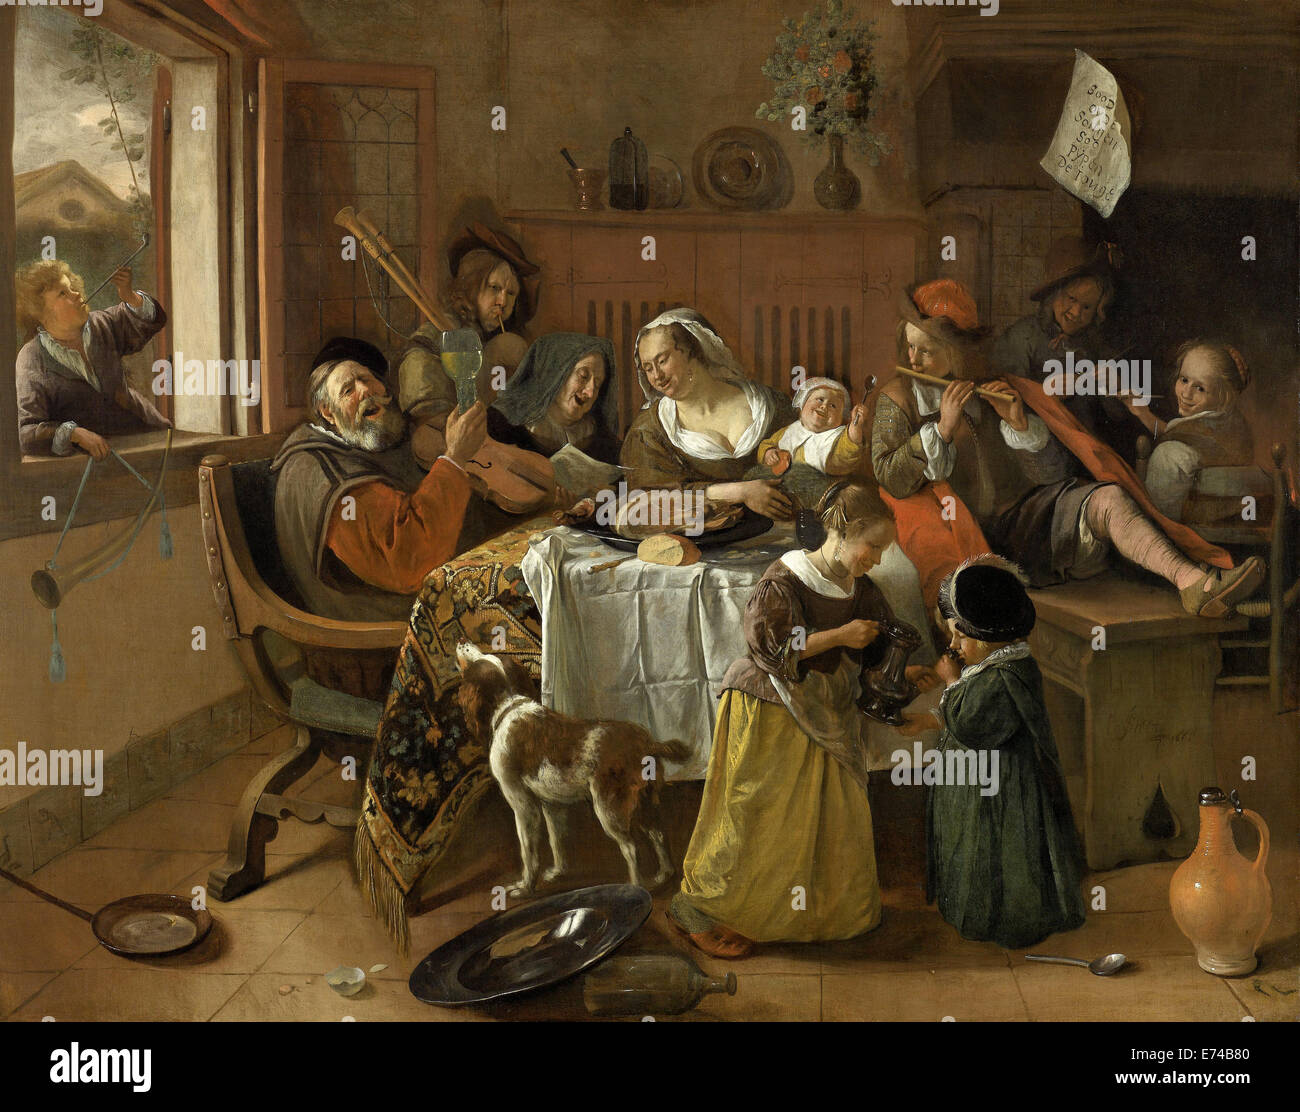 The Merry Family - by Jan Havicksz Steen, 1668 Stock Photo